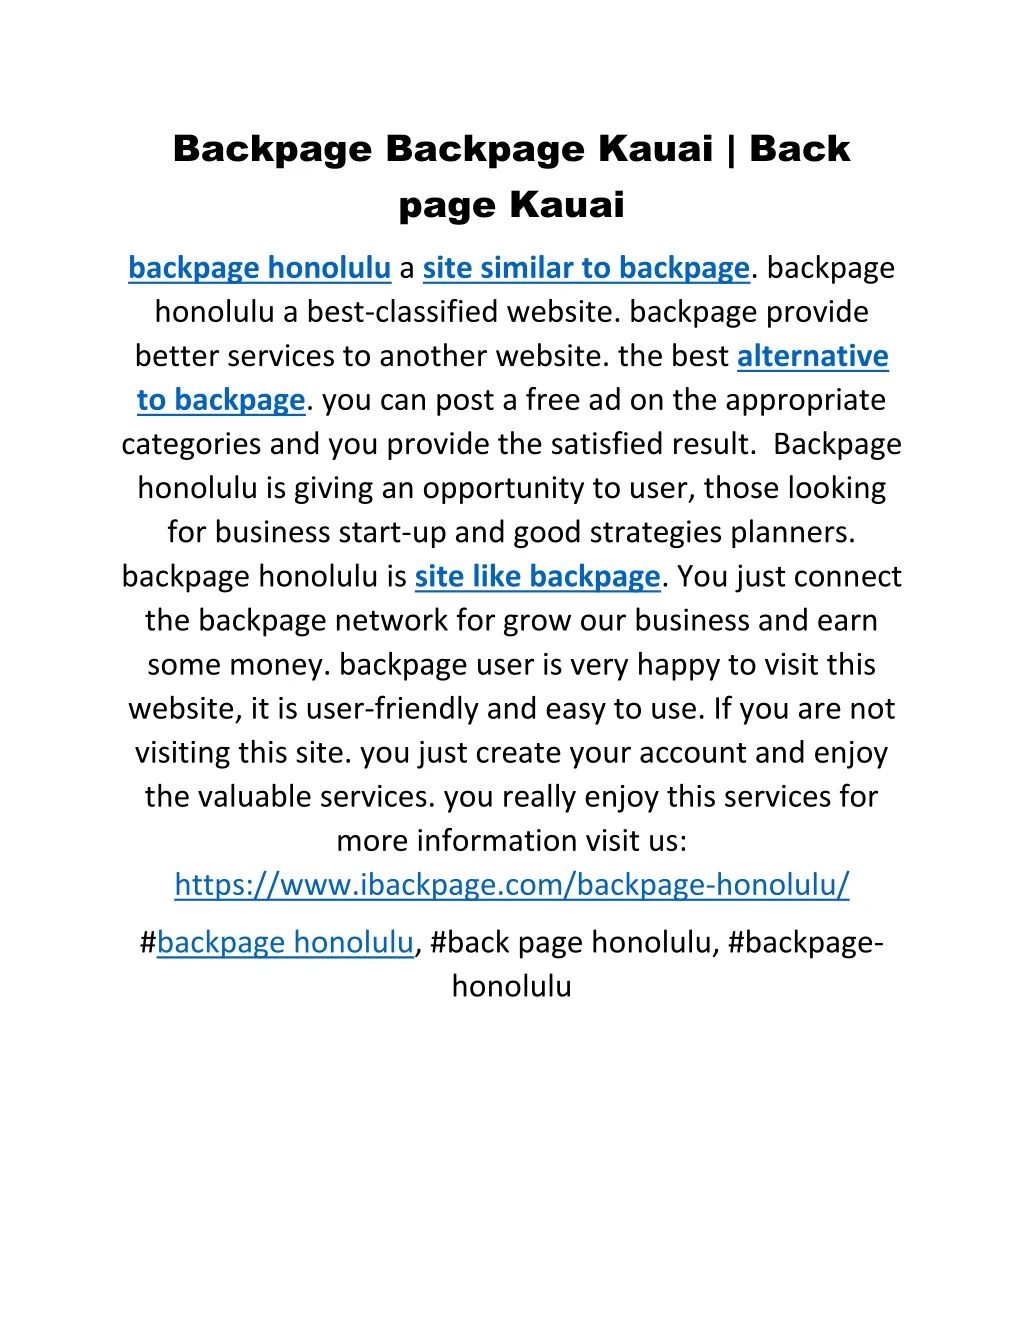 backpage backpage kauai back page kauai n.